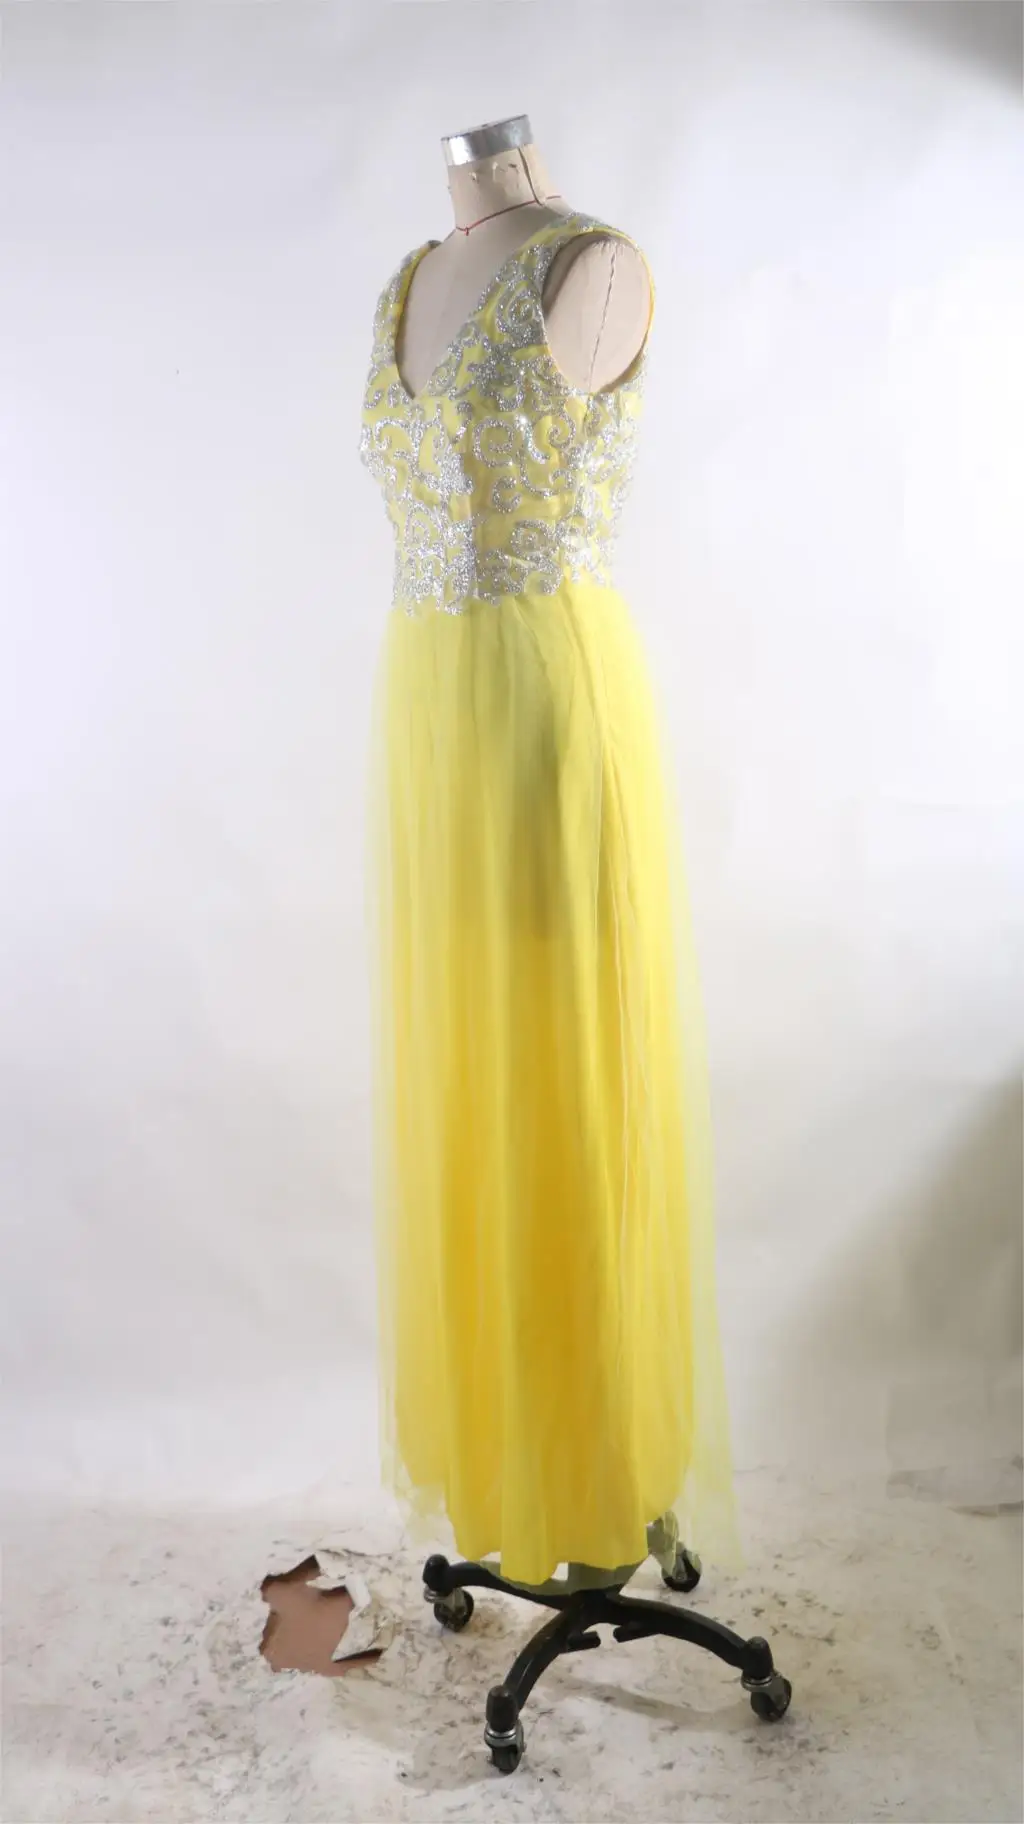 ZTVitality Vestidos сексуальное однотонное желтое длинное платье с v-образным вырезом на спине женские зимние платья модное праздничное платье Vestido De Fiesta